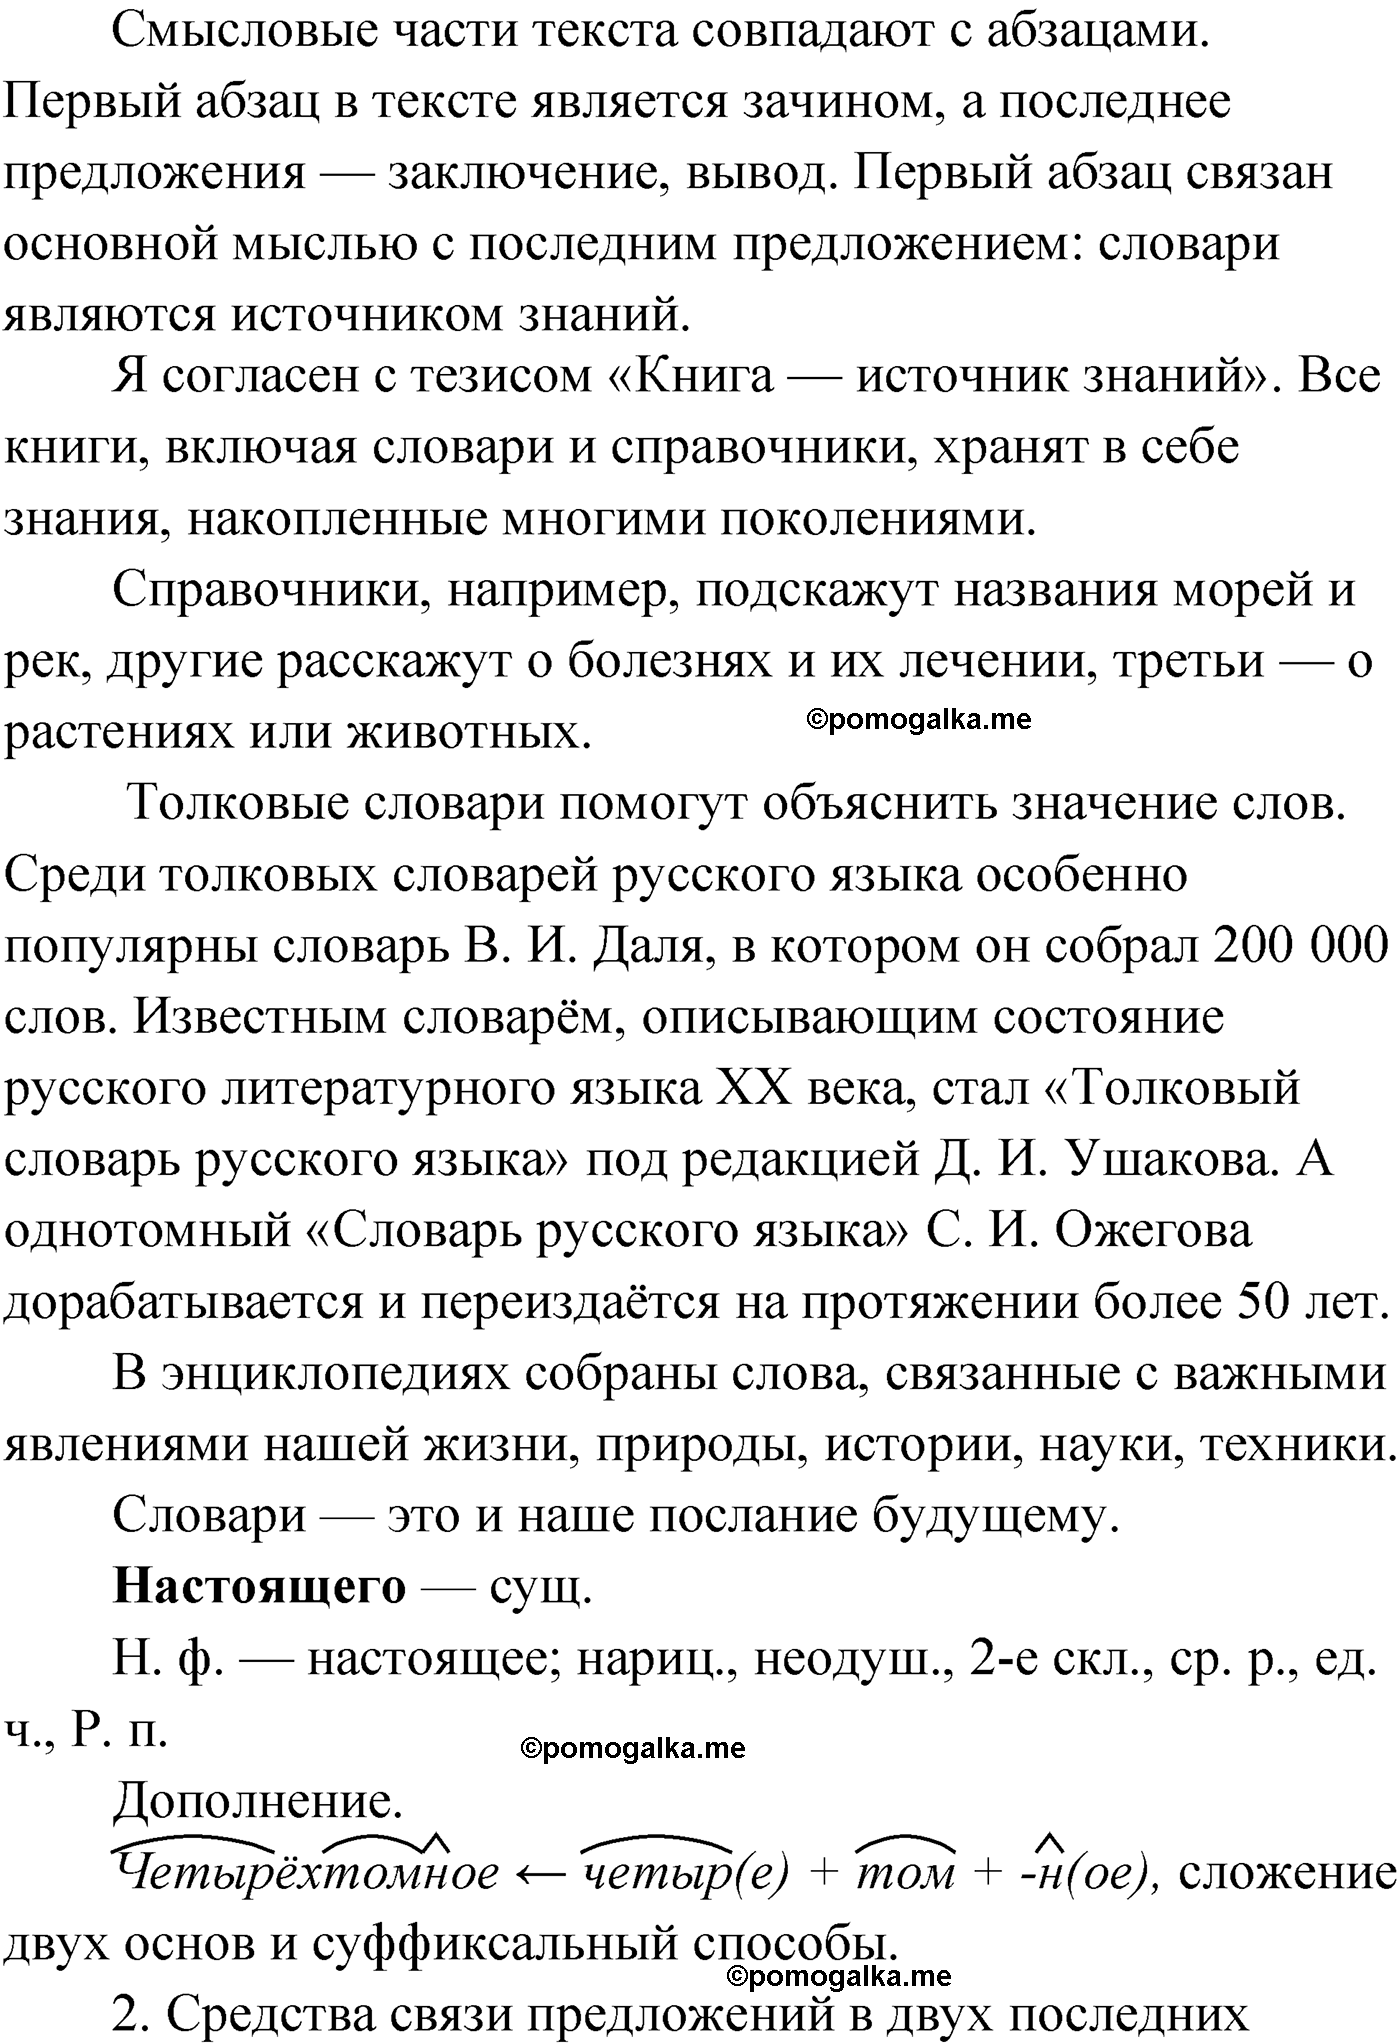 упражнение №23 русский язык 9 класс Мурина 2019 год